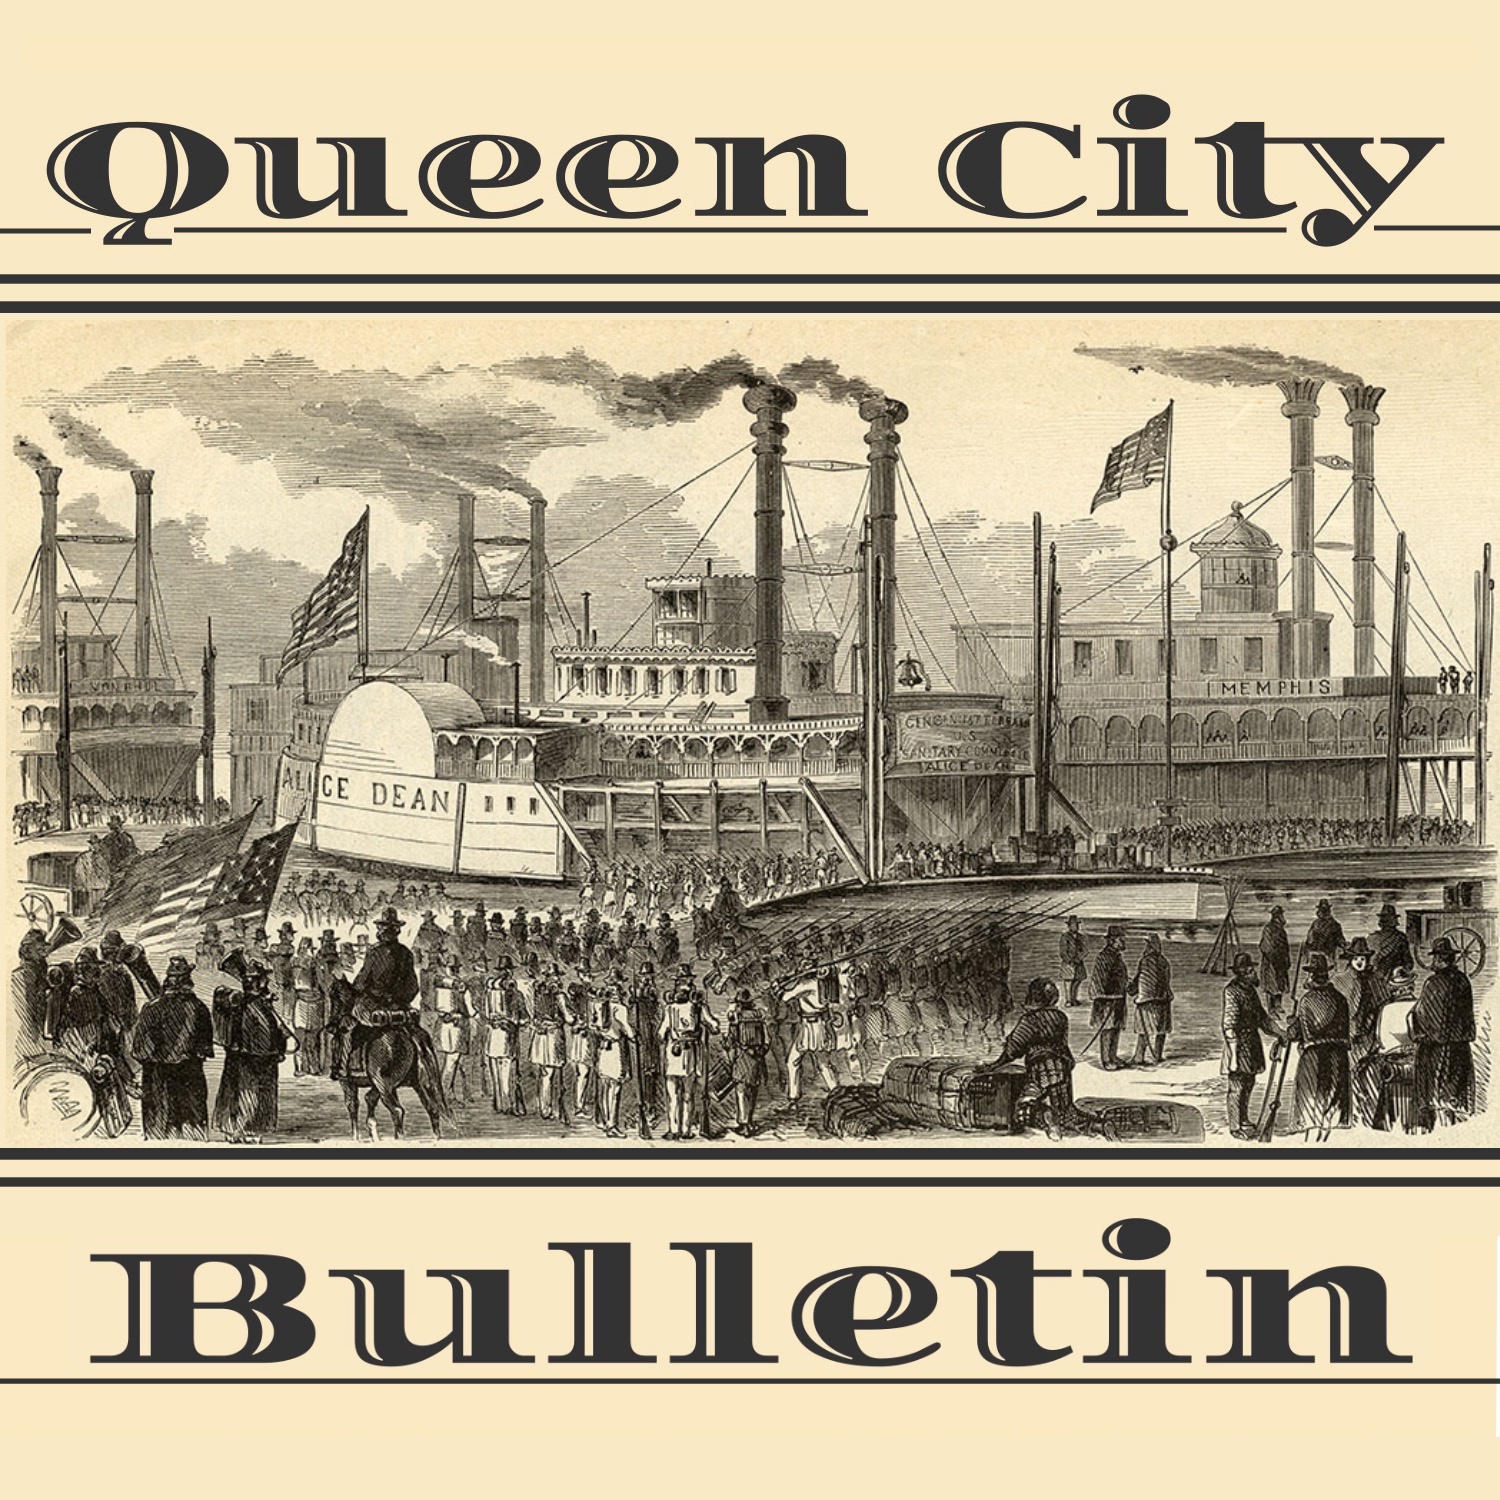 Queen City Bulletin